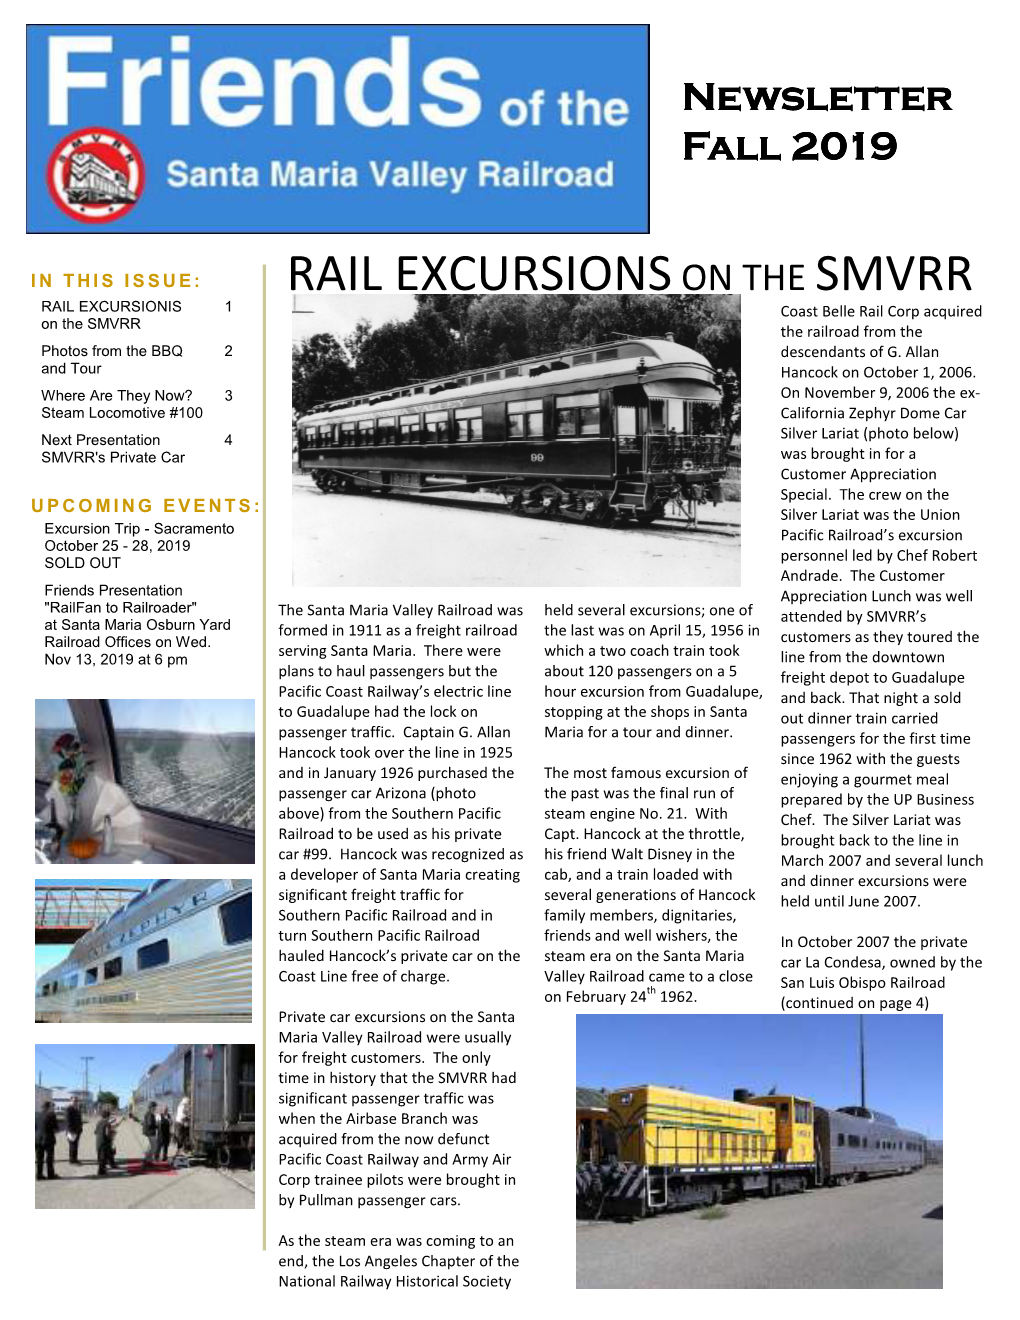 Rail Excursionson the Smvrr